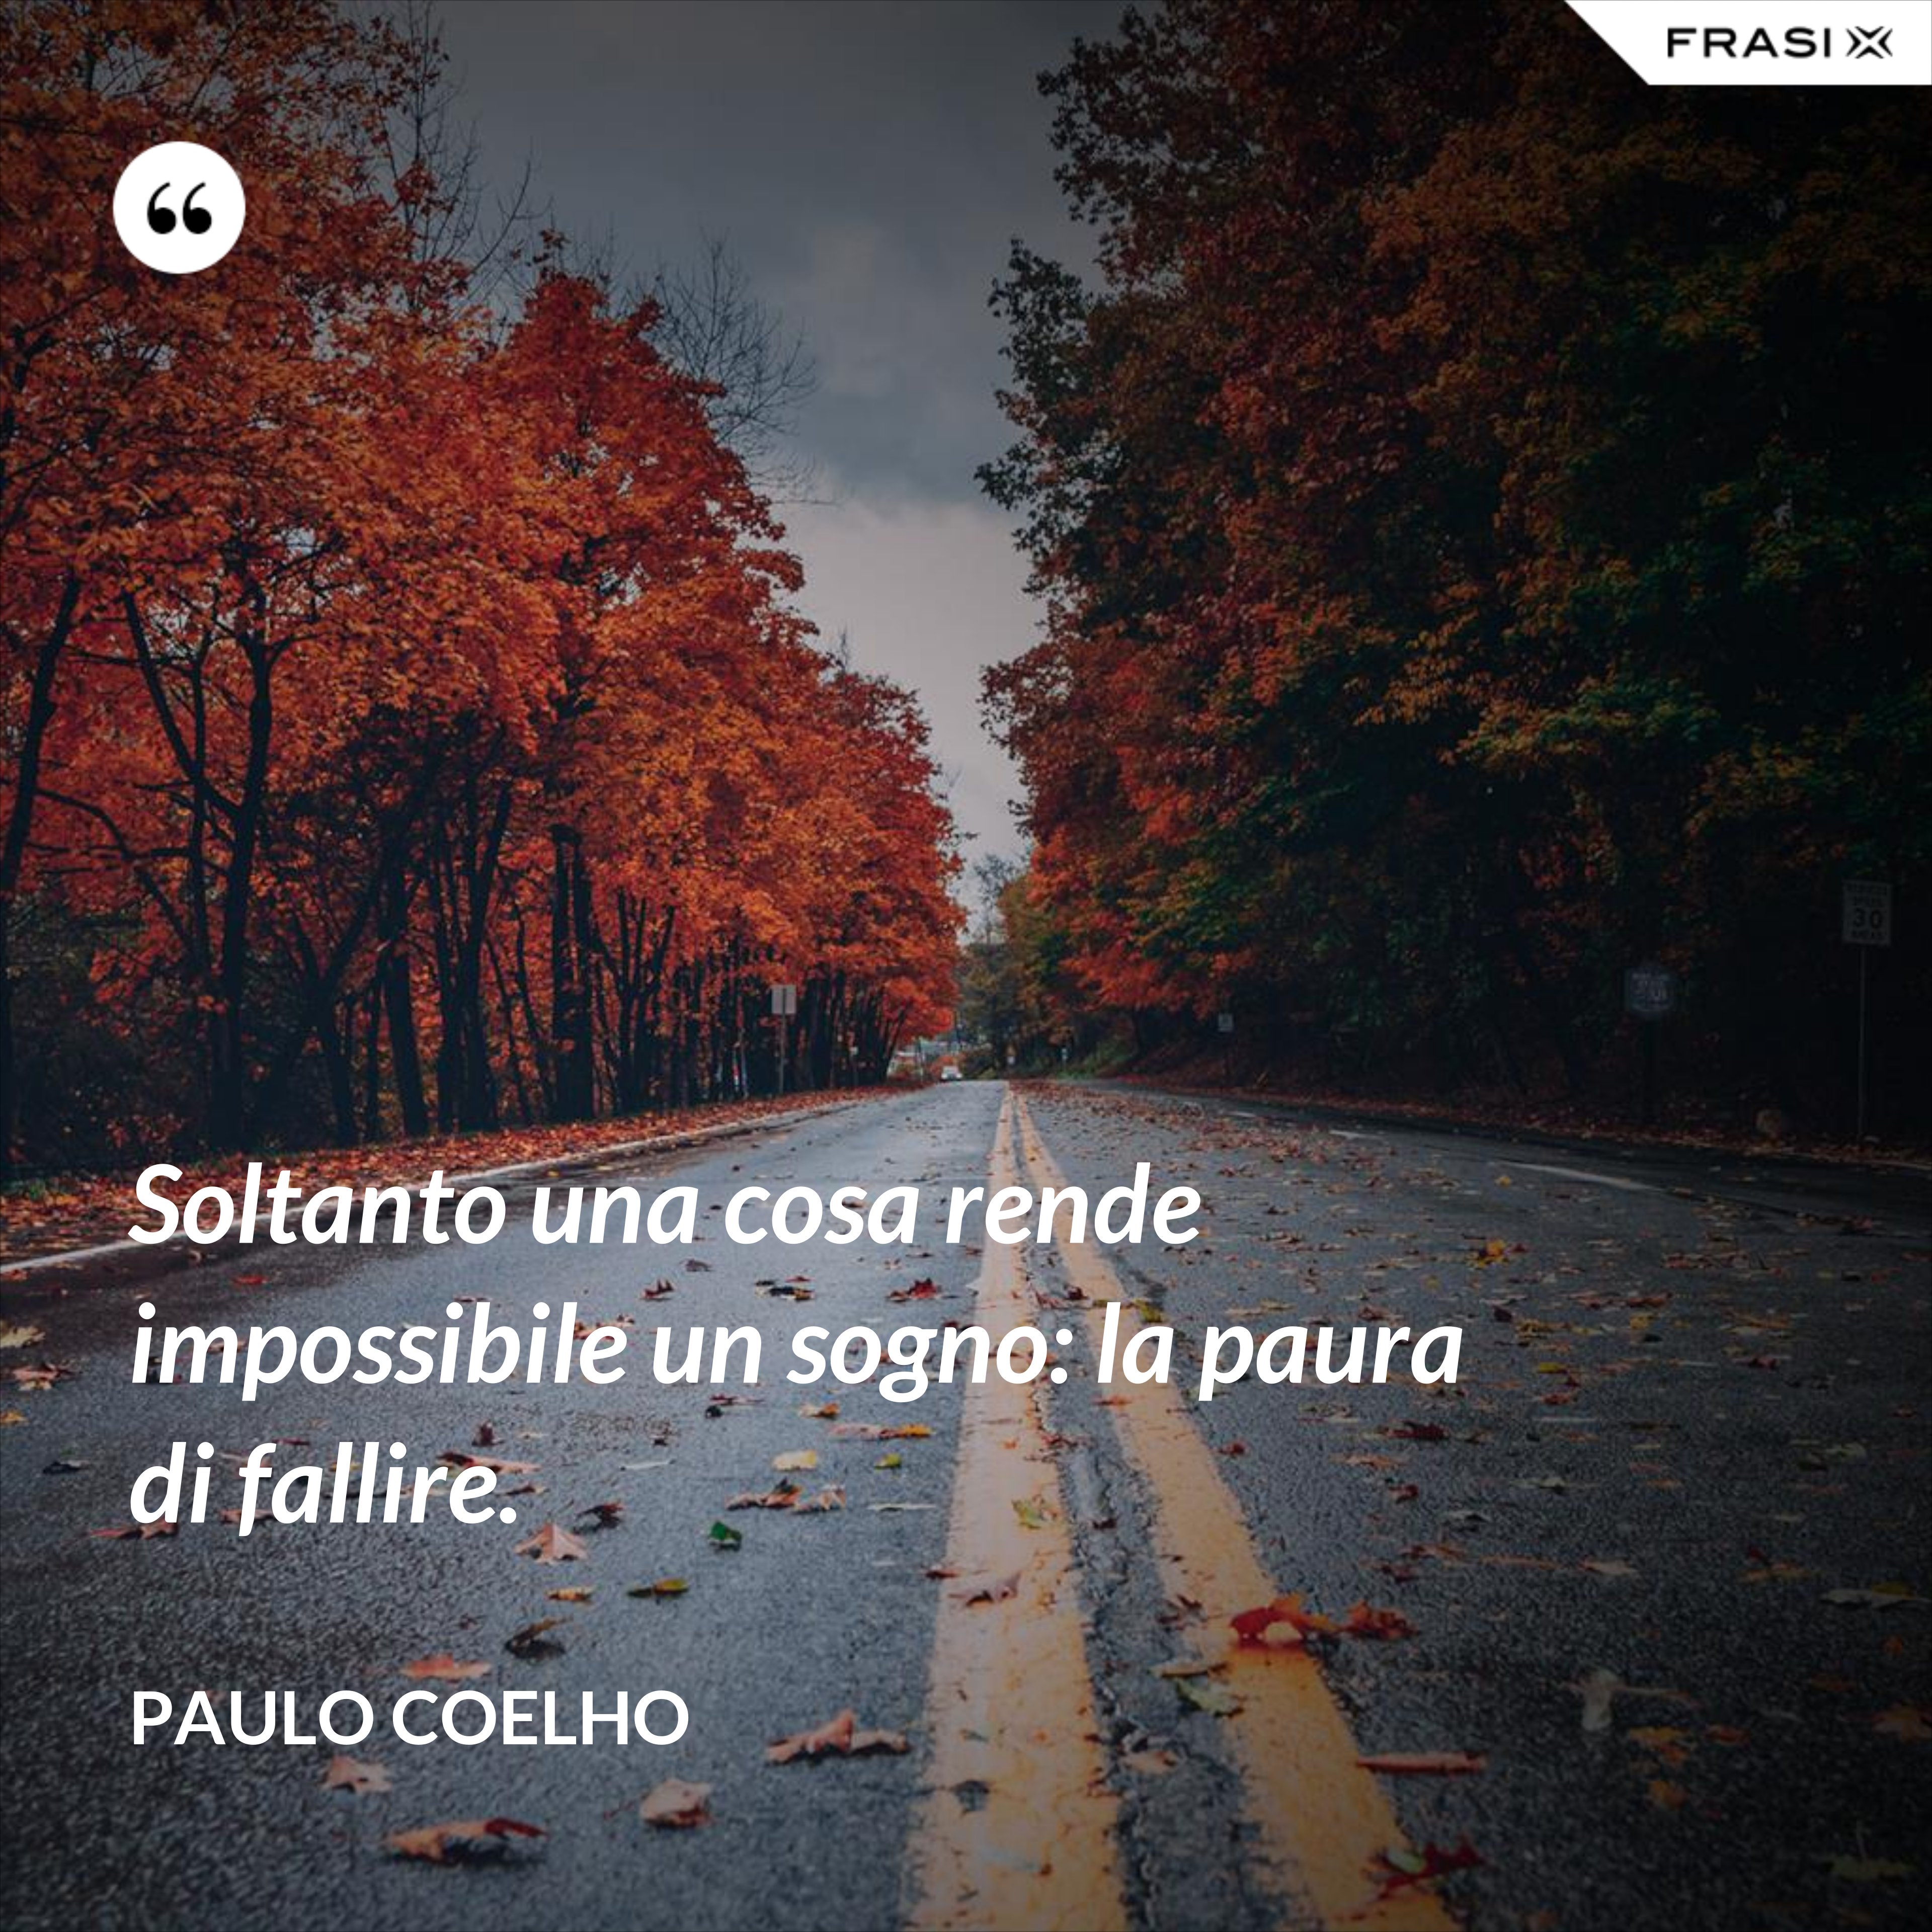 Soltanto una cosa rende impossibile un sogno: la paura di fallire. - Paulo Coelho